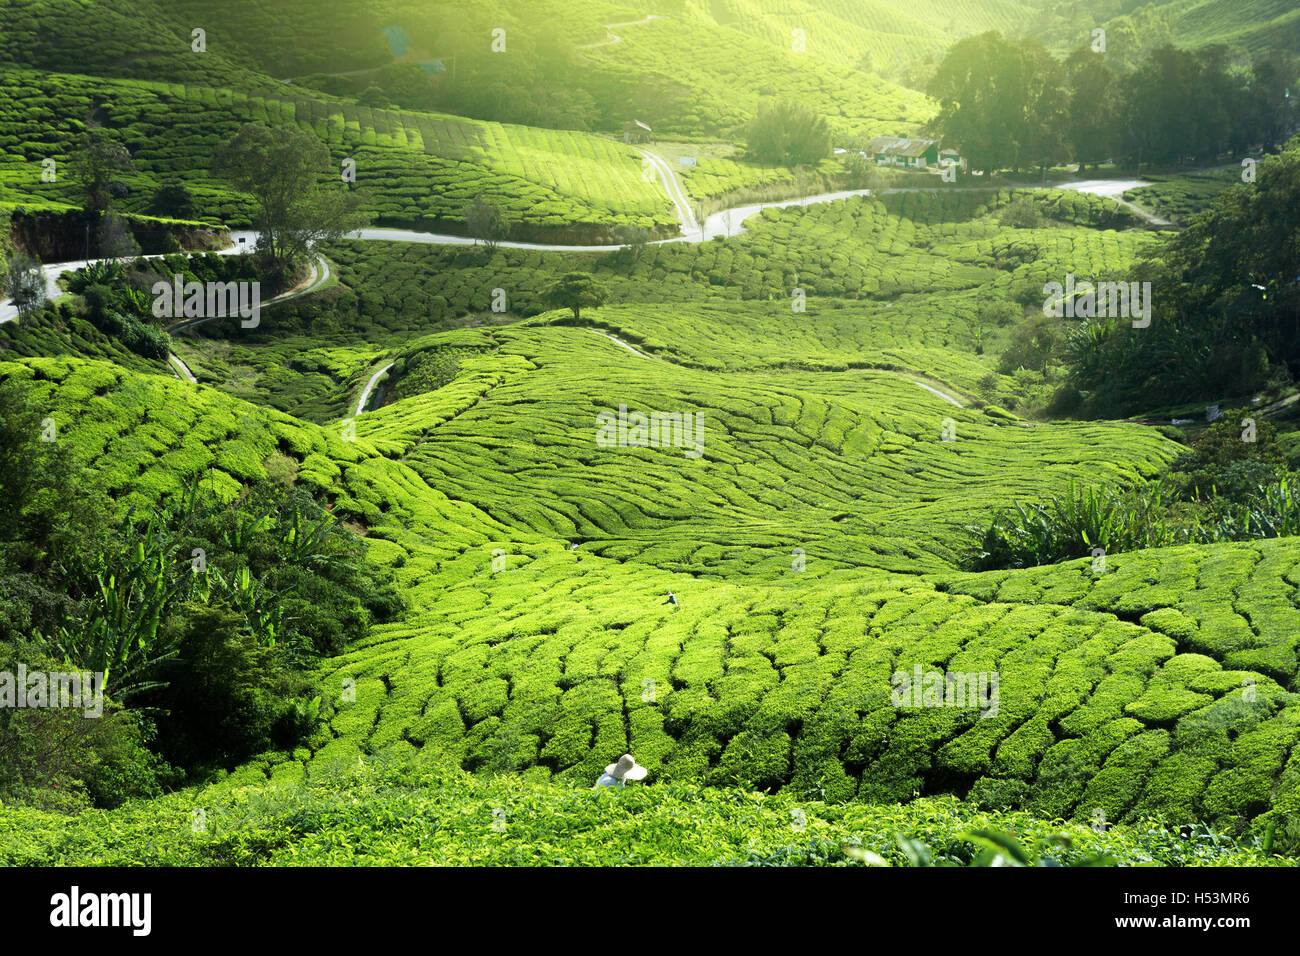 tea plantation in mist Stock Photo